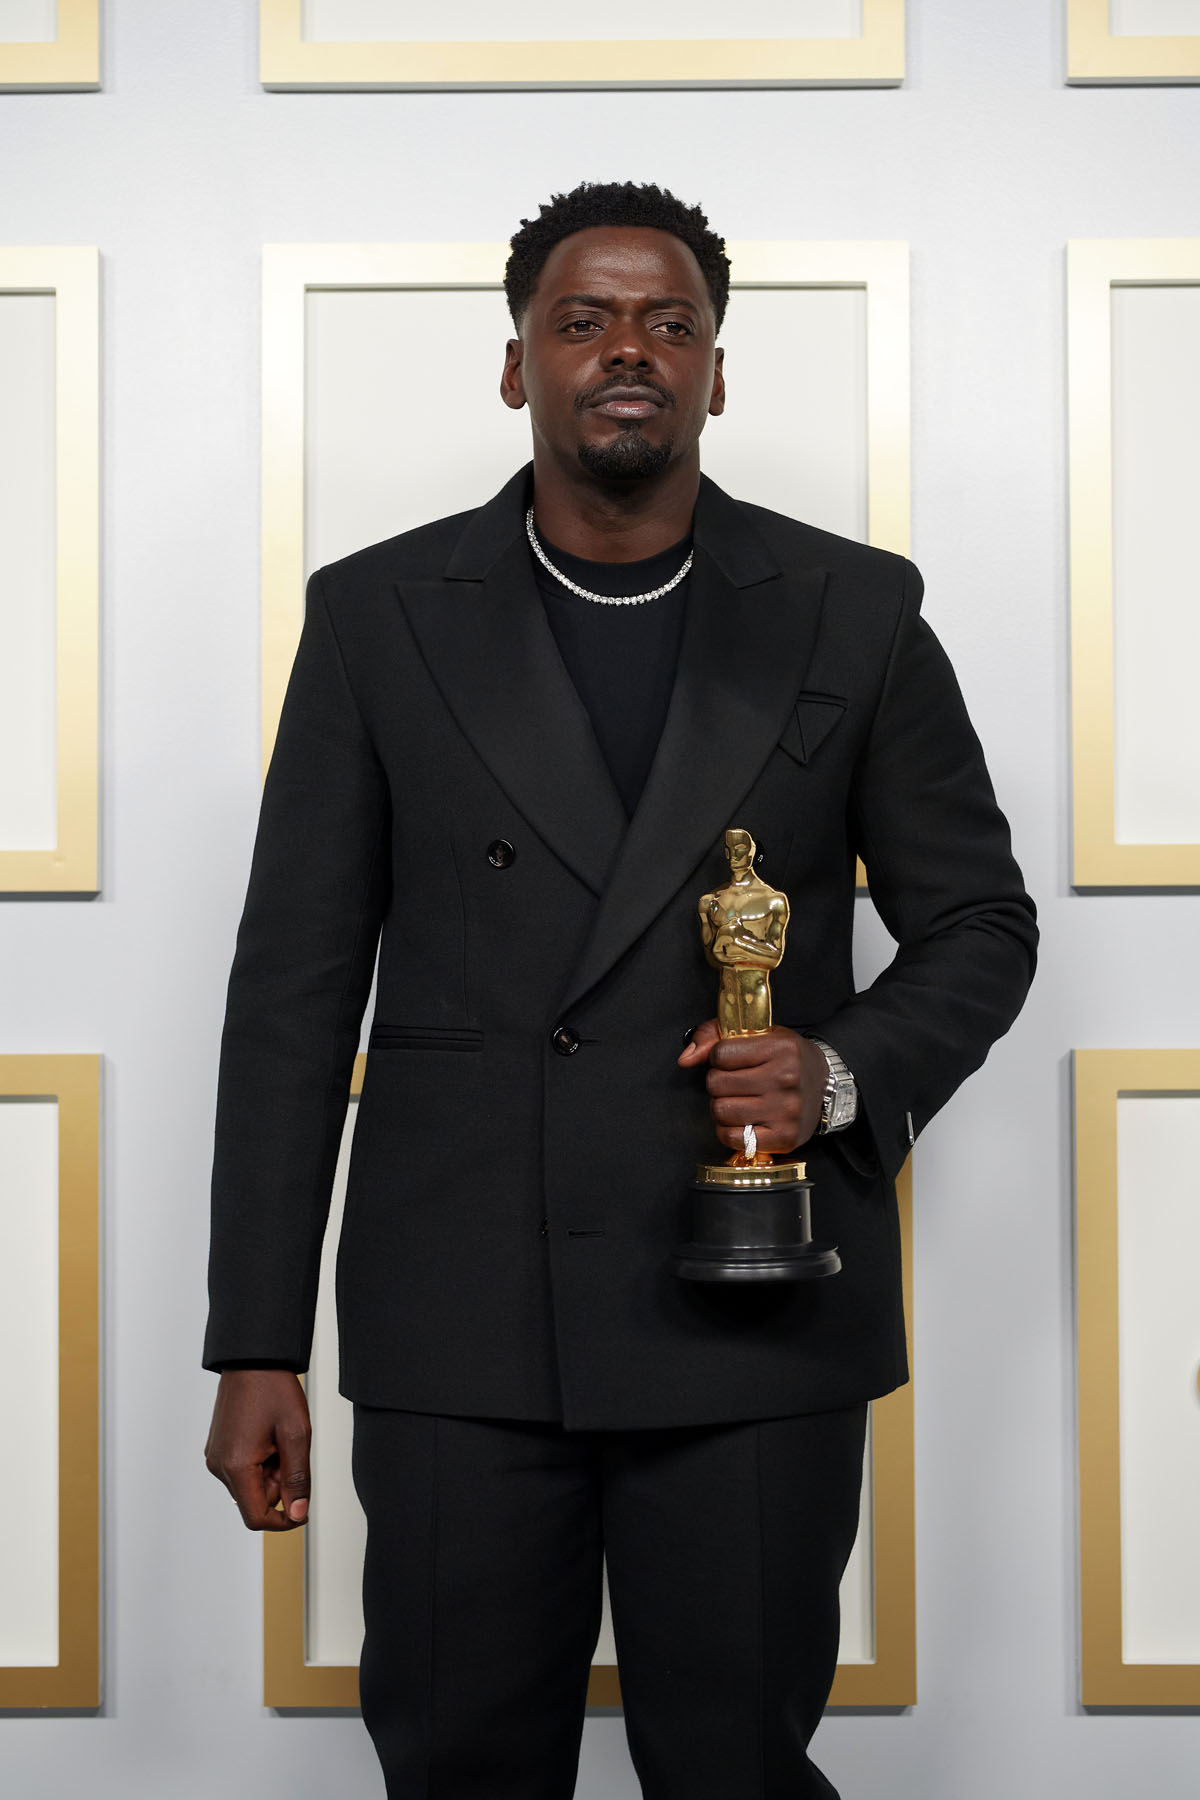 93rd Oscars, Academy Awards